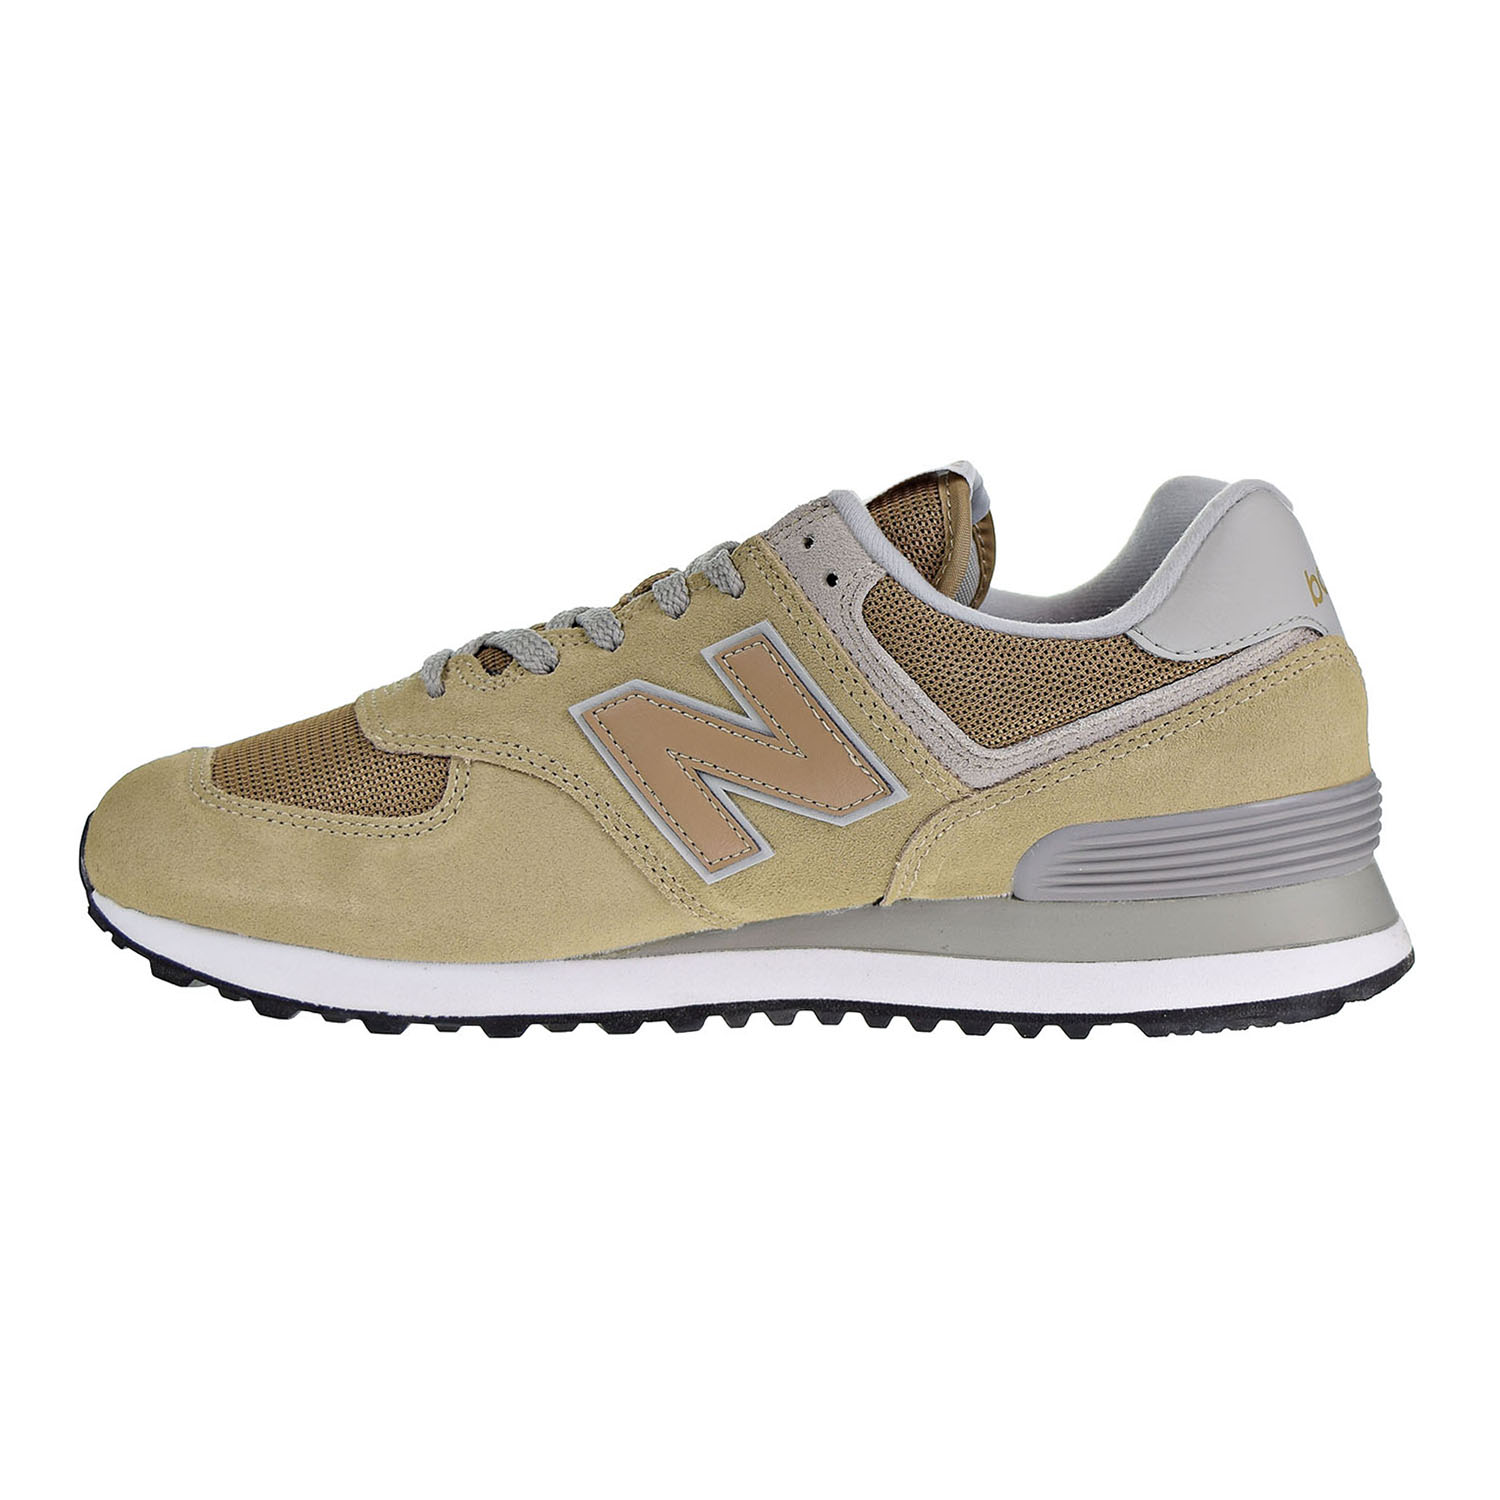 New Balance 574 Men's Shoes Hemp-Beige ML574EBE | eBay